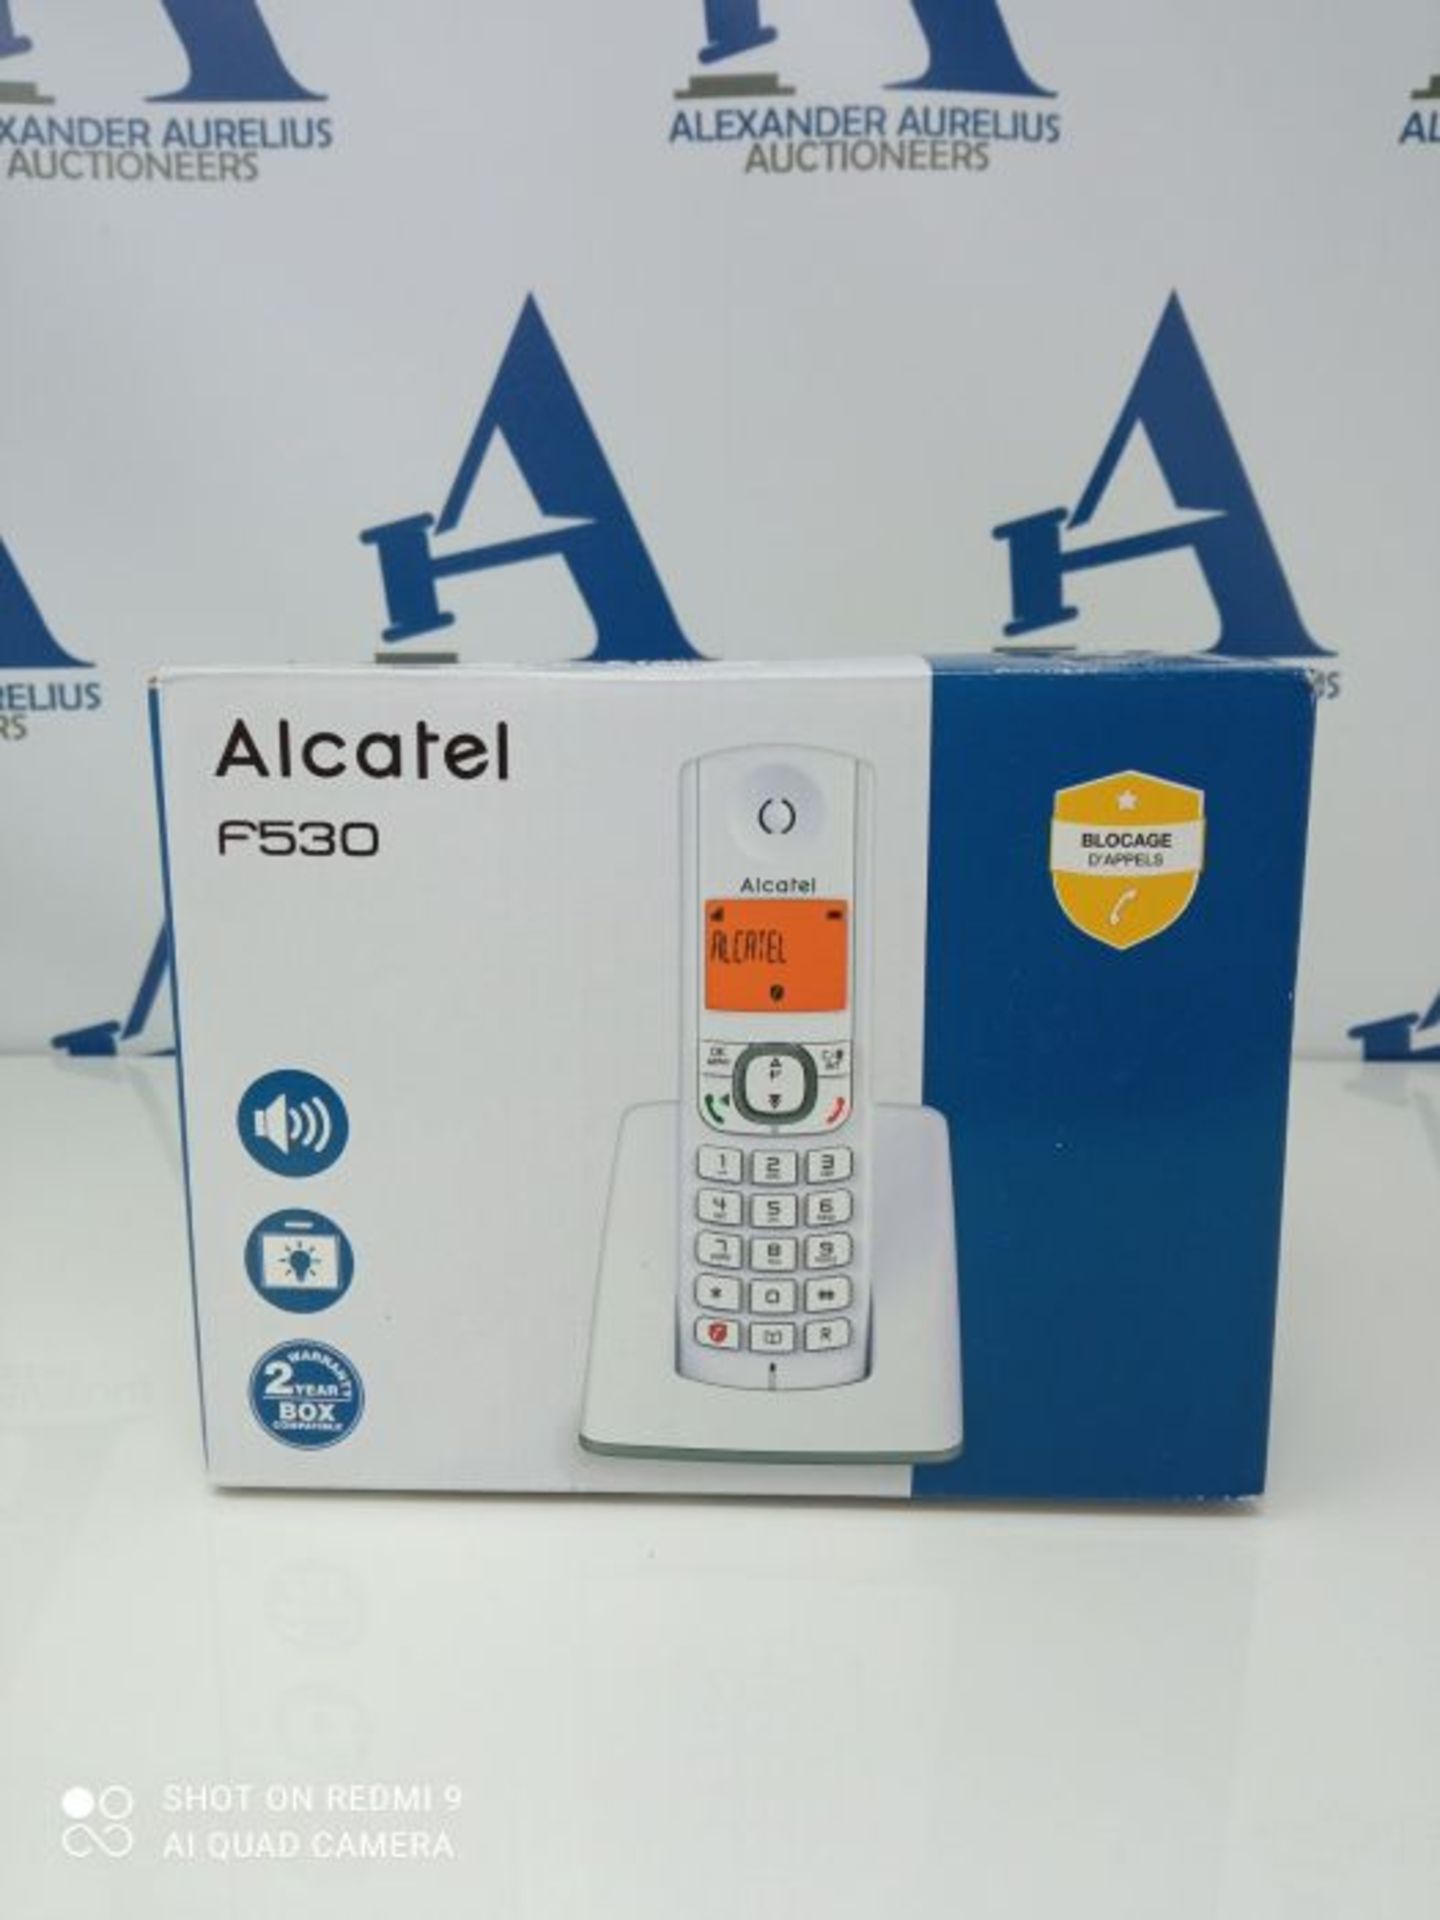 Alcatel F530 - T??l??phone sans fil DECT, Mains libres, Grand ??cran r??tro?? - Image 2 of 3